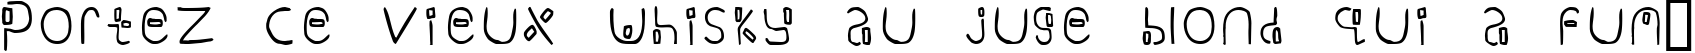 Пример написания шрифтом Yikatu текста на французском